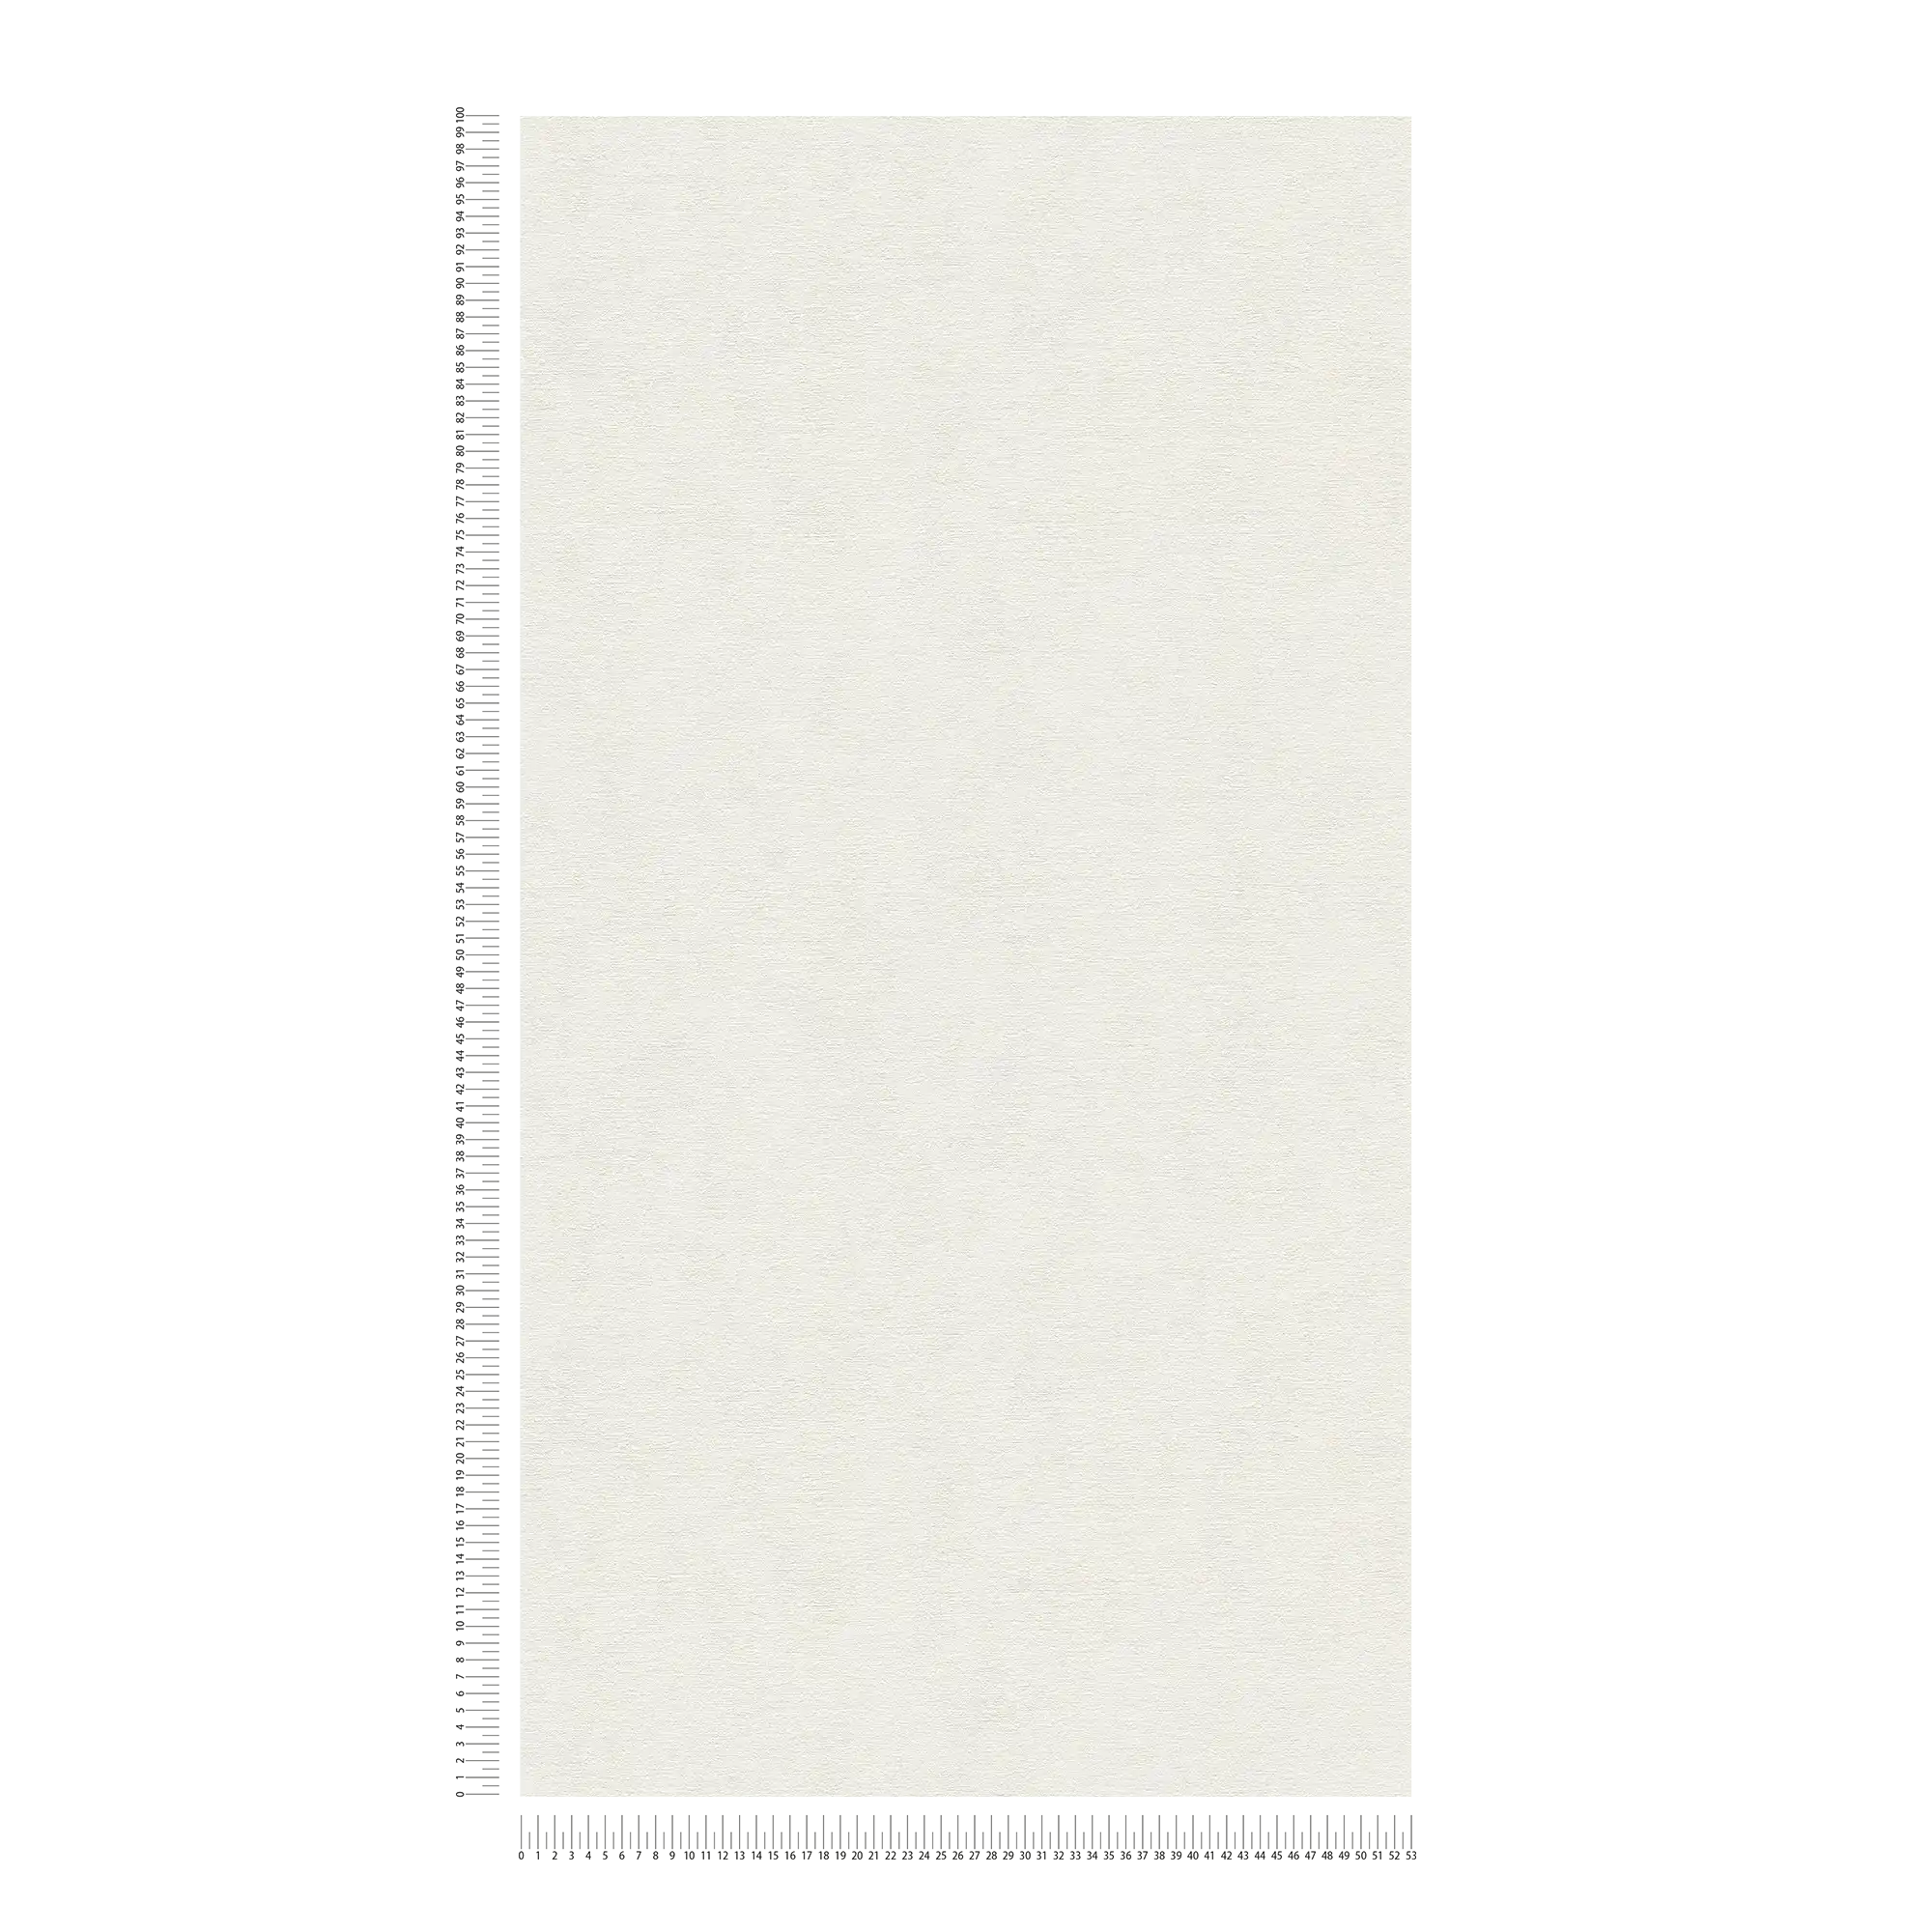             Vliesbehang in een effen kleur - wit
        